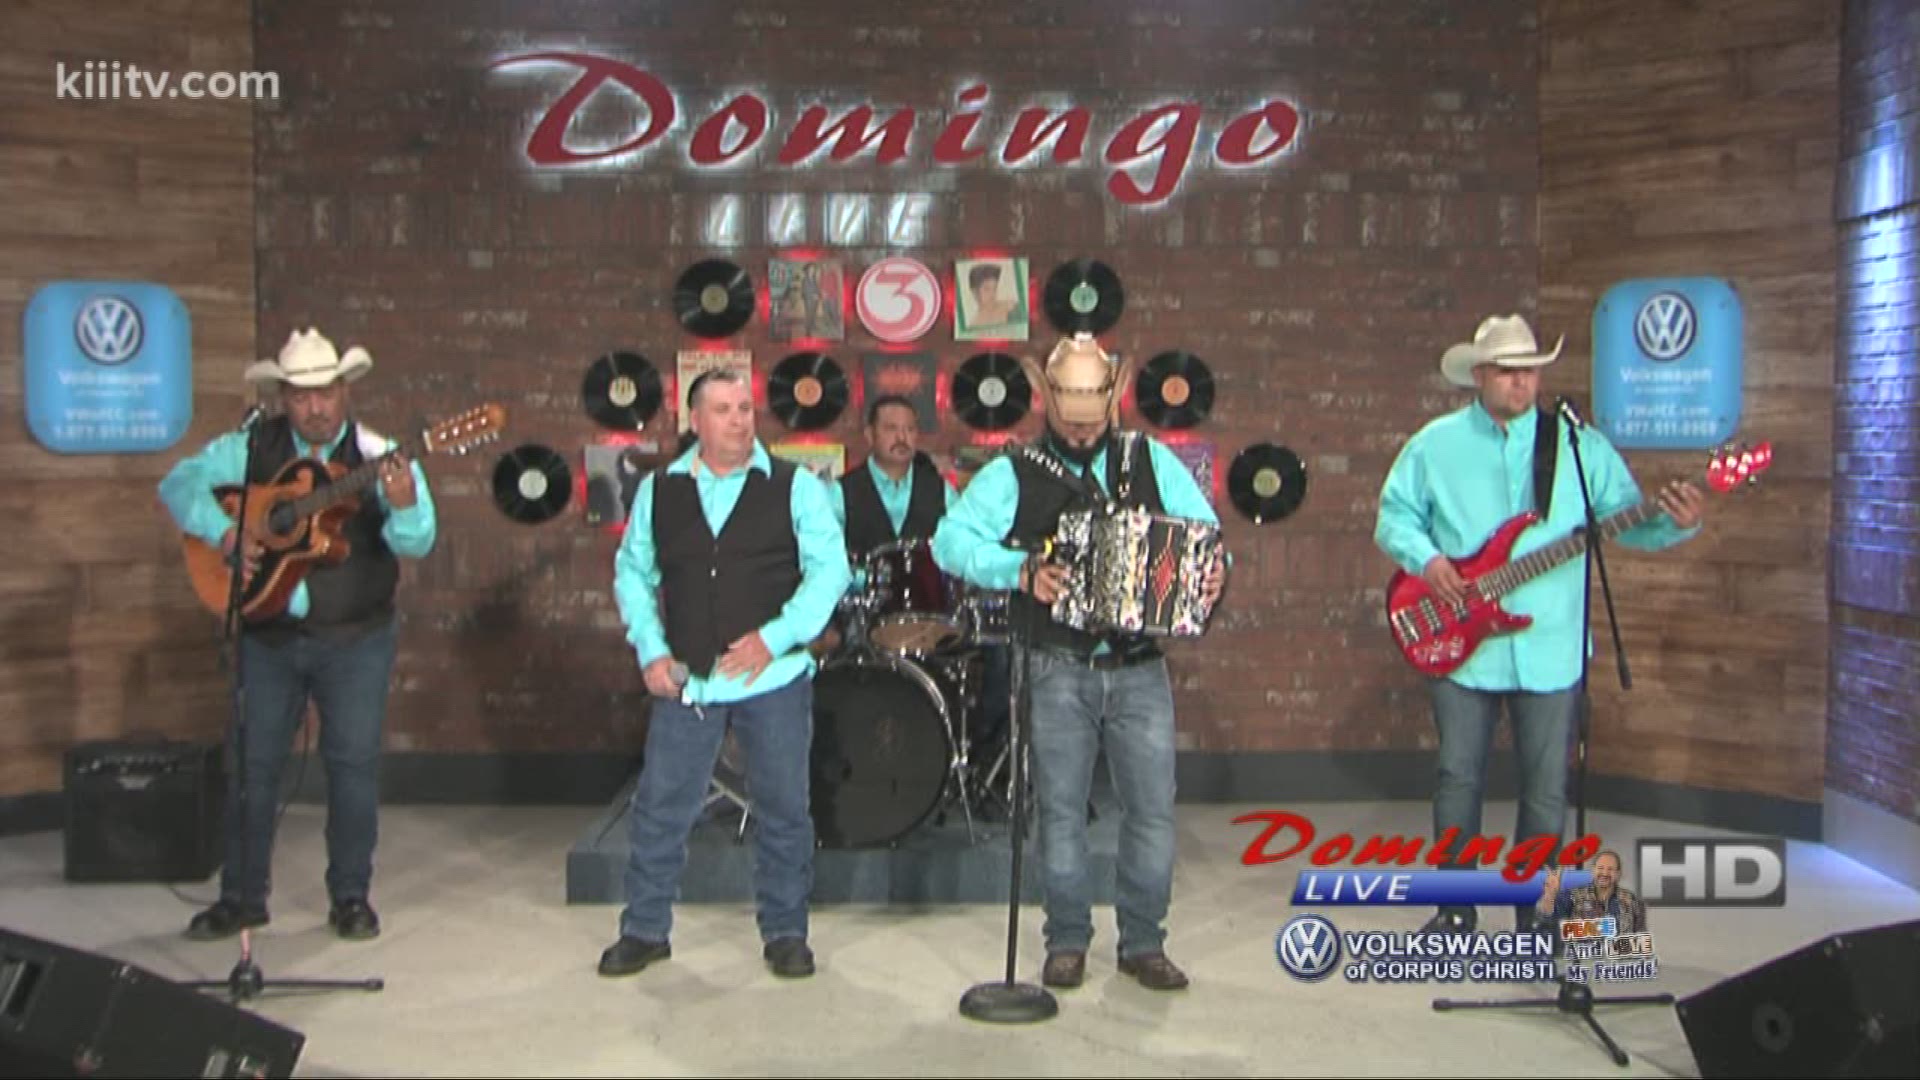 Conjunto Imprezzion performing "Ojo Por Ojo" on Domingo Live.